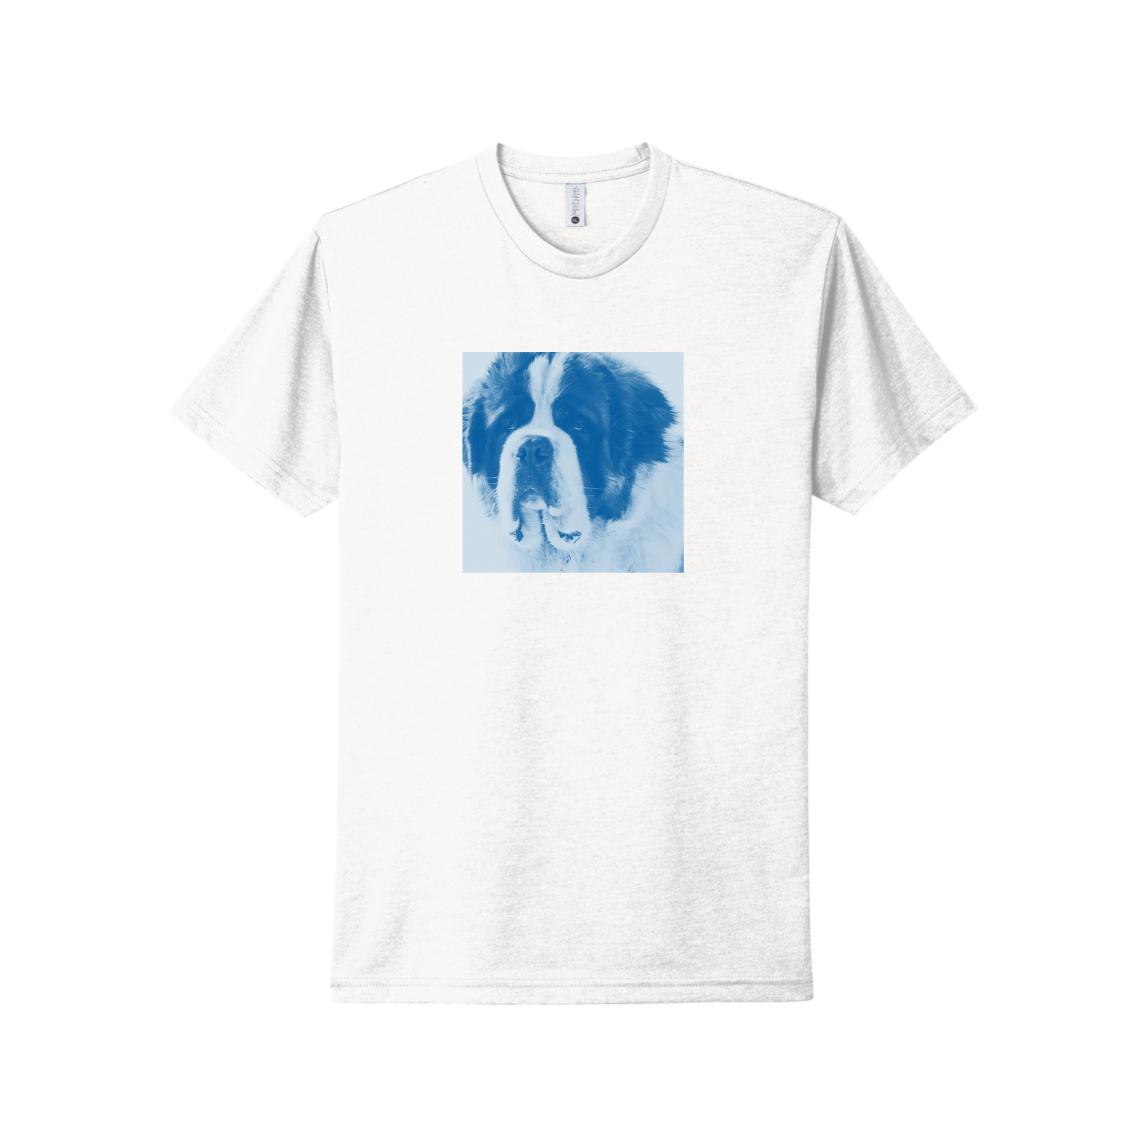 St. Bernard T-shirt